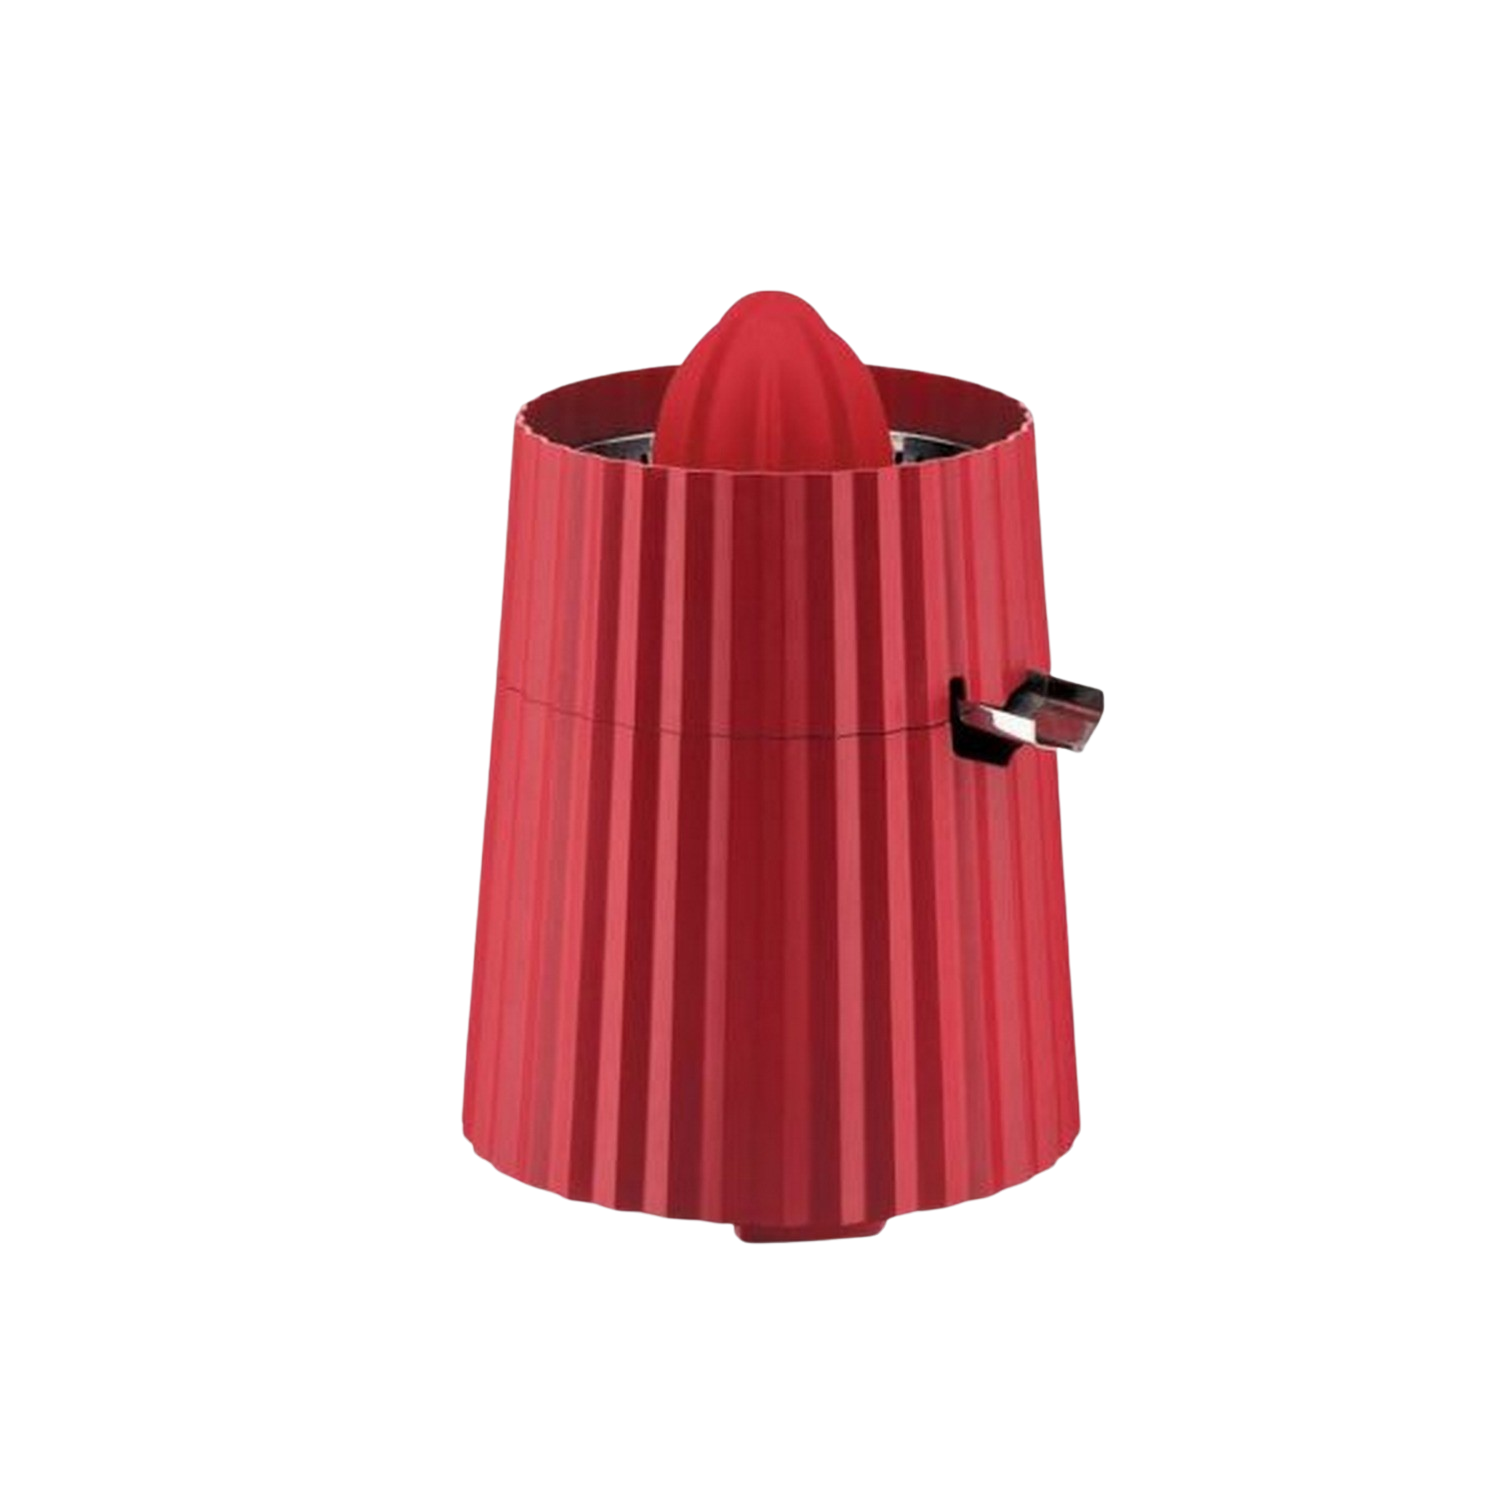 Exprimidor Alessi Mdl07 plisse rojo 80 w libre bpa antideslizante filtro de acero inoxidable modelo